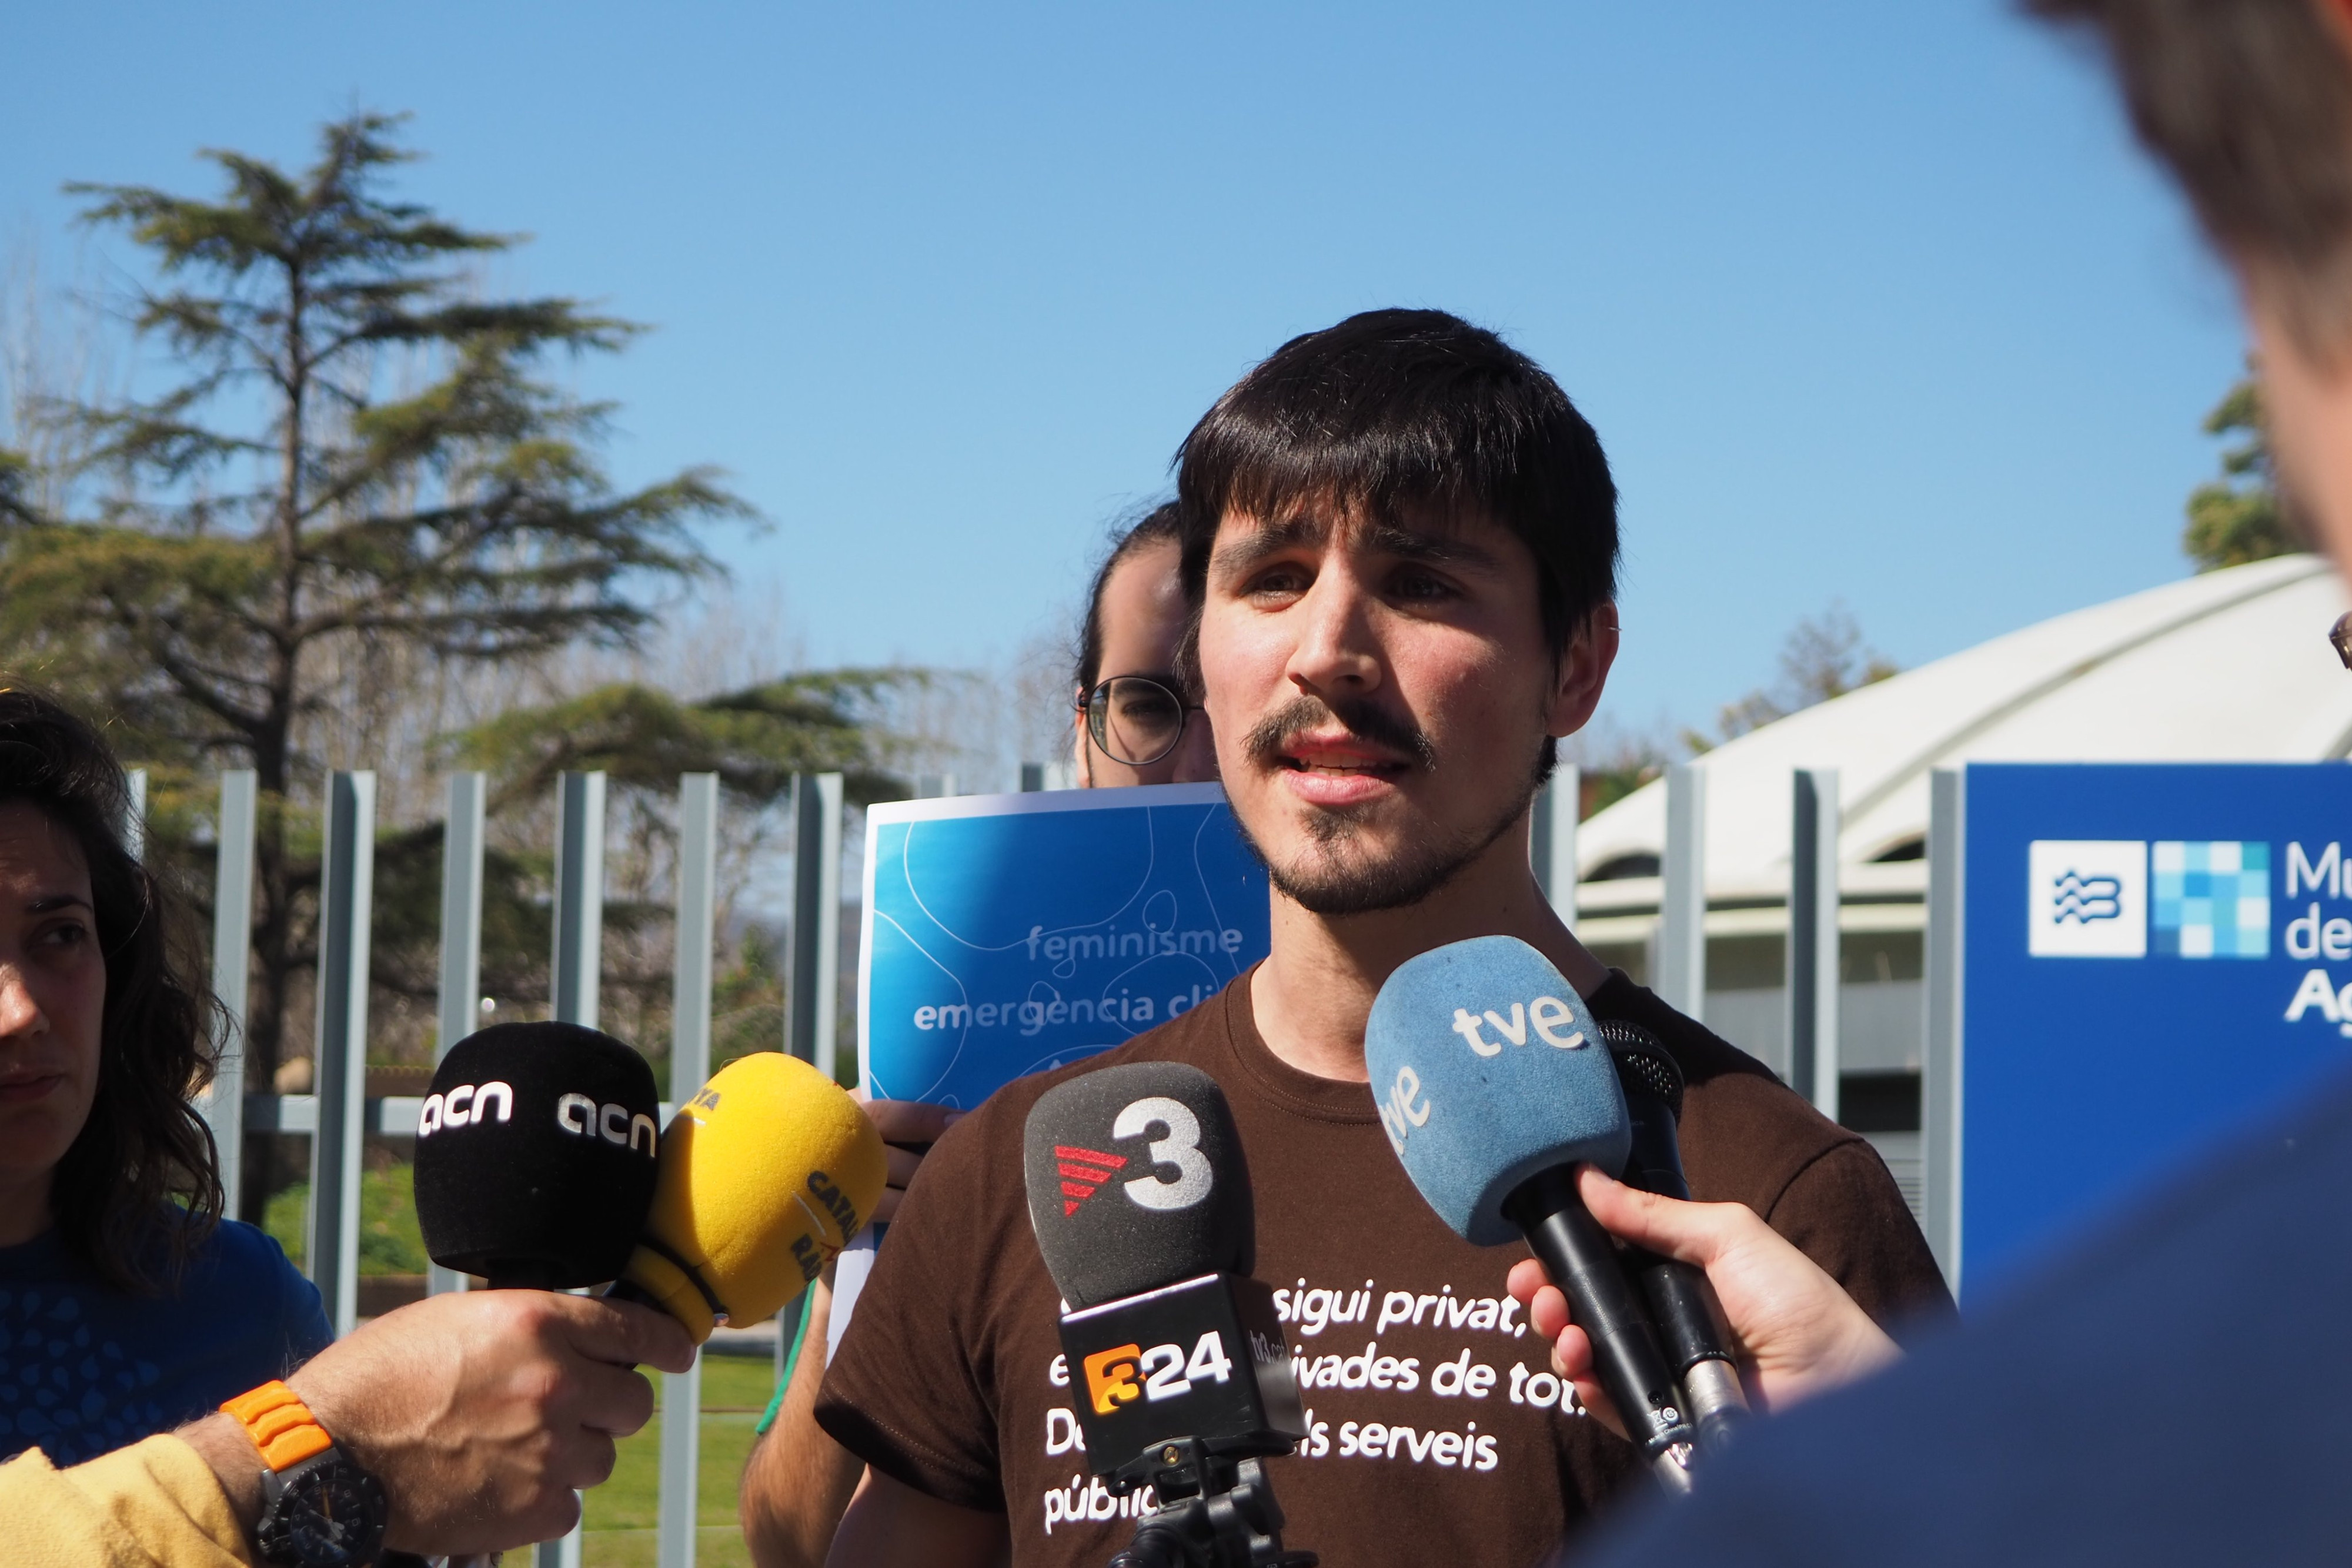 Un representante de Aigua és Vida presenta el documento frente al Museu de les Aigües de Agbar, en Cornellà de Llobregat / AIGUA ÉS VIDA